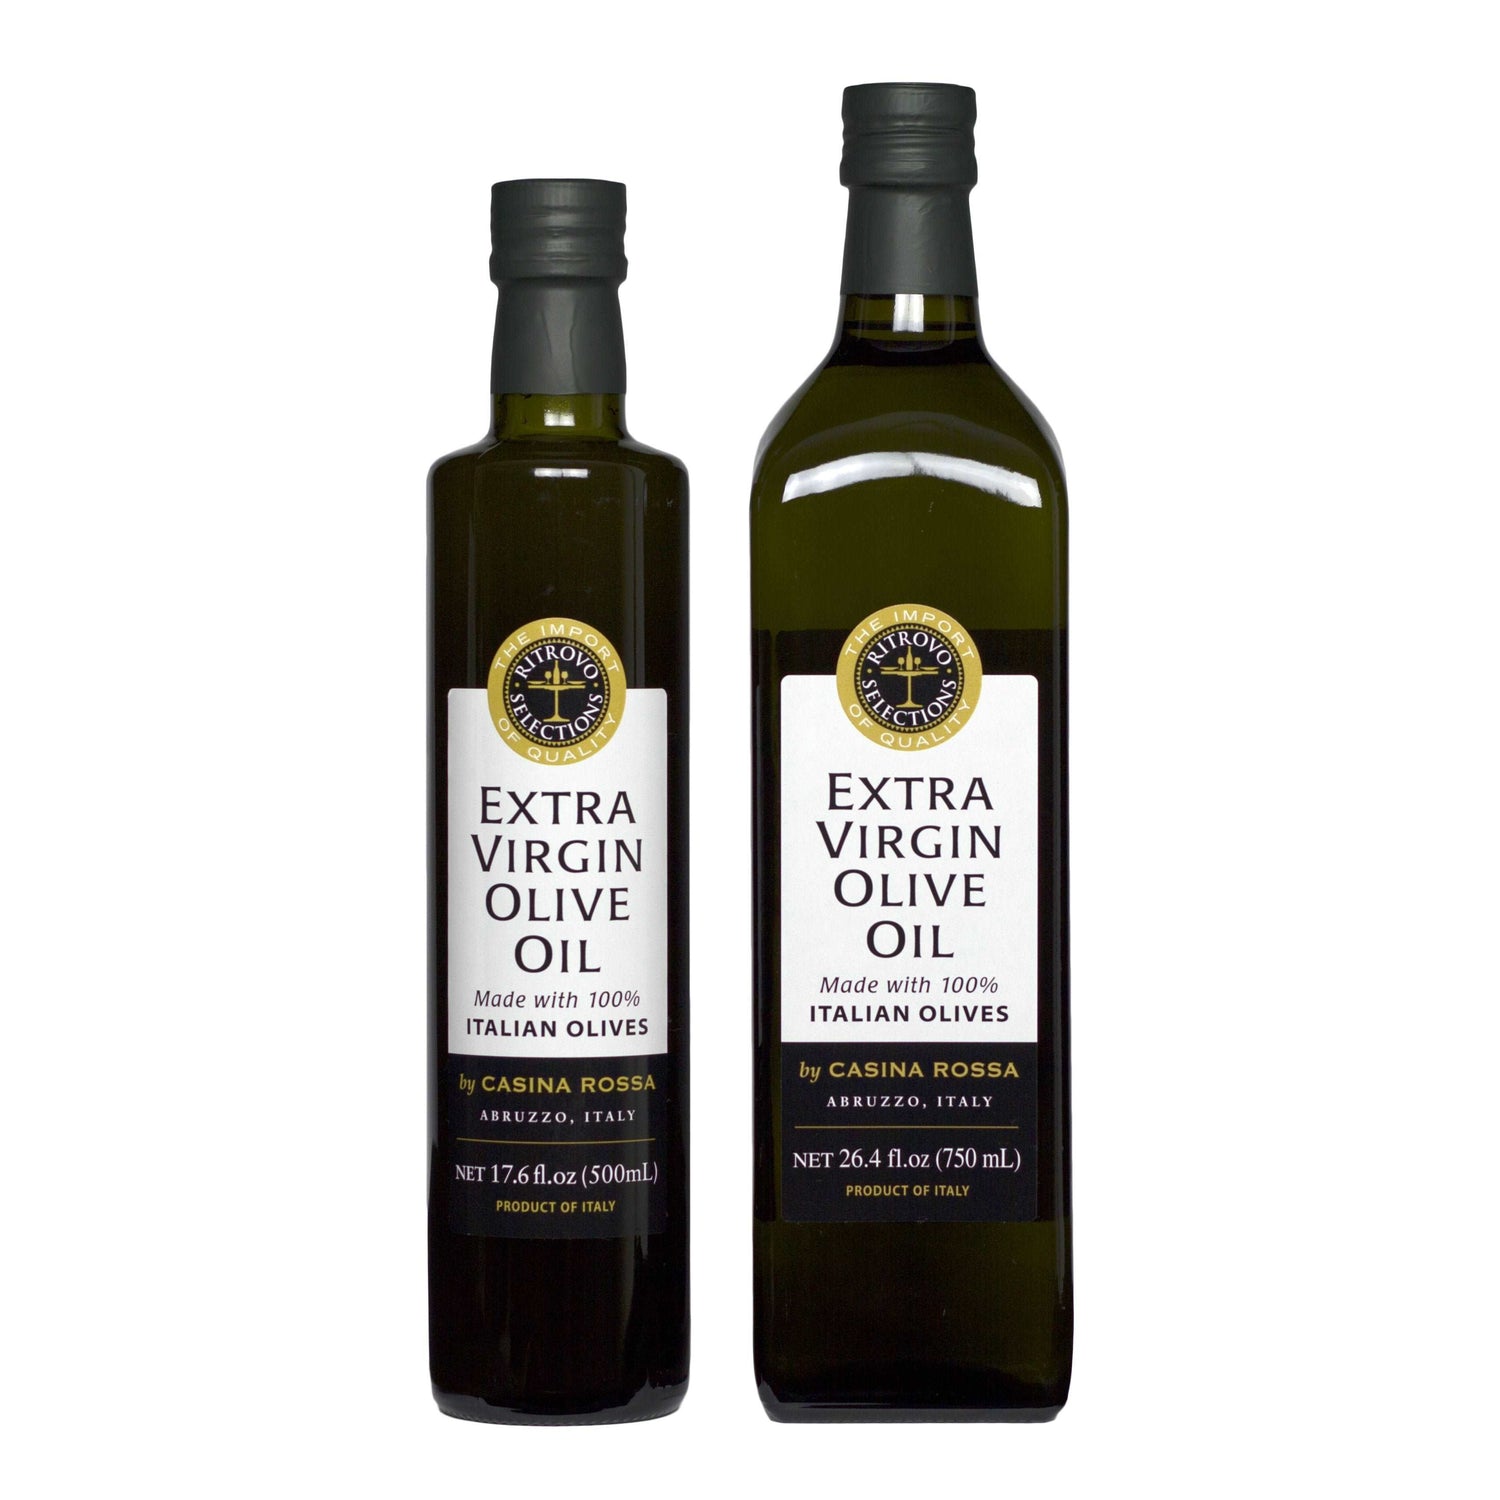 Casina Rossa Extra Virgin Olive Oil 500ml